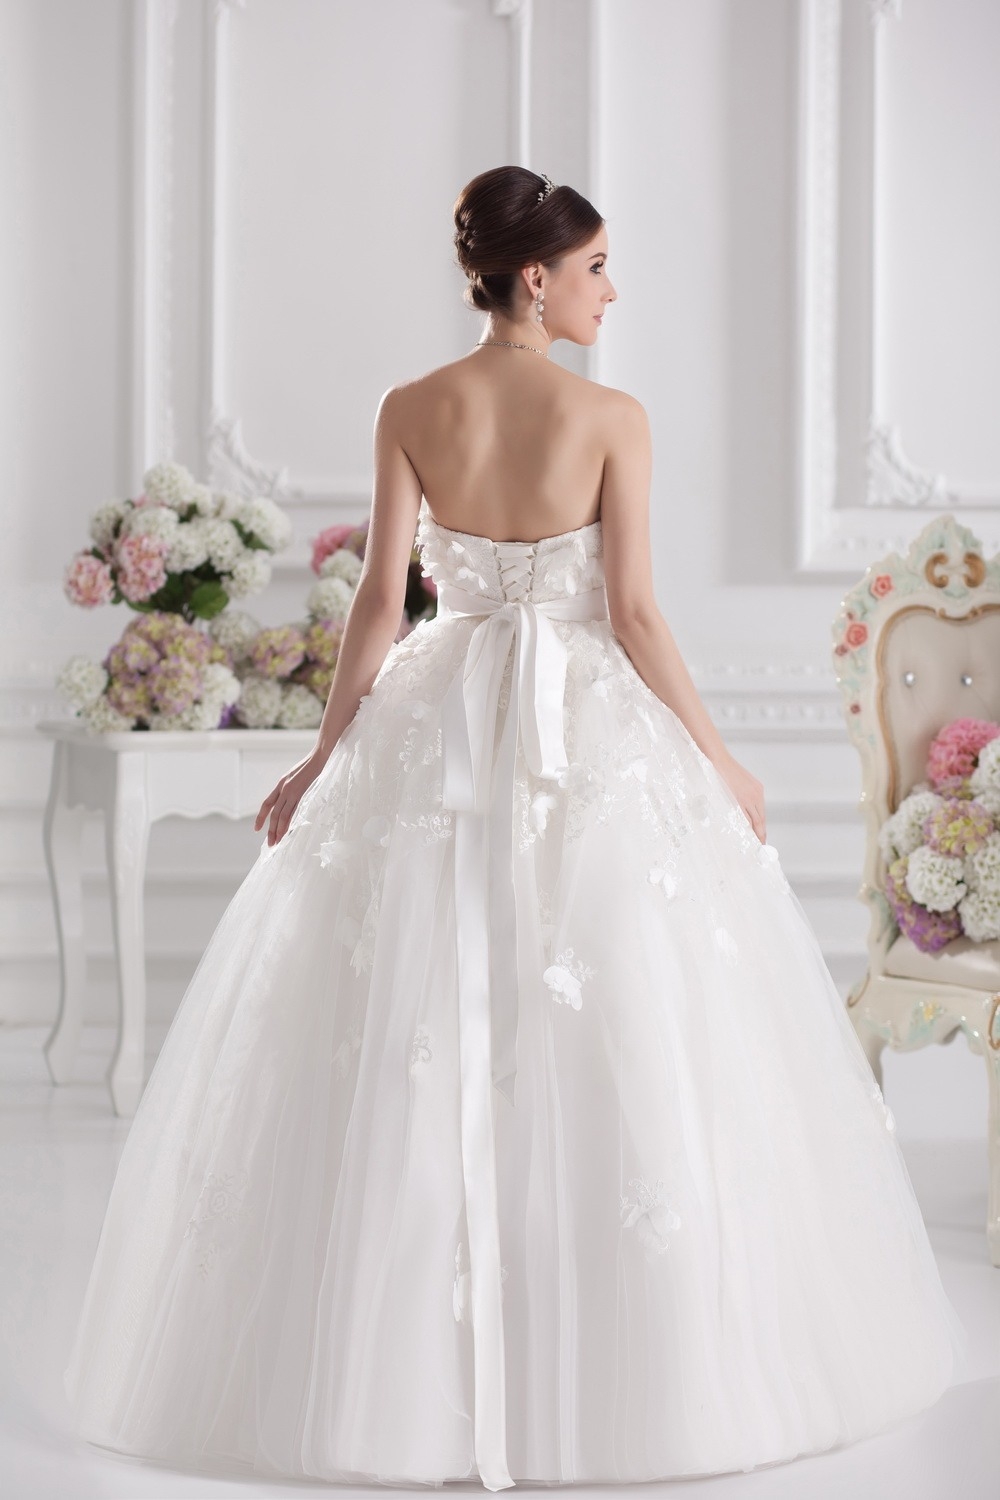 15 Luxurius Hochzeitskleider Online für 201913 Genial Hochzeitskleider Online Bester Preis